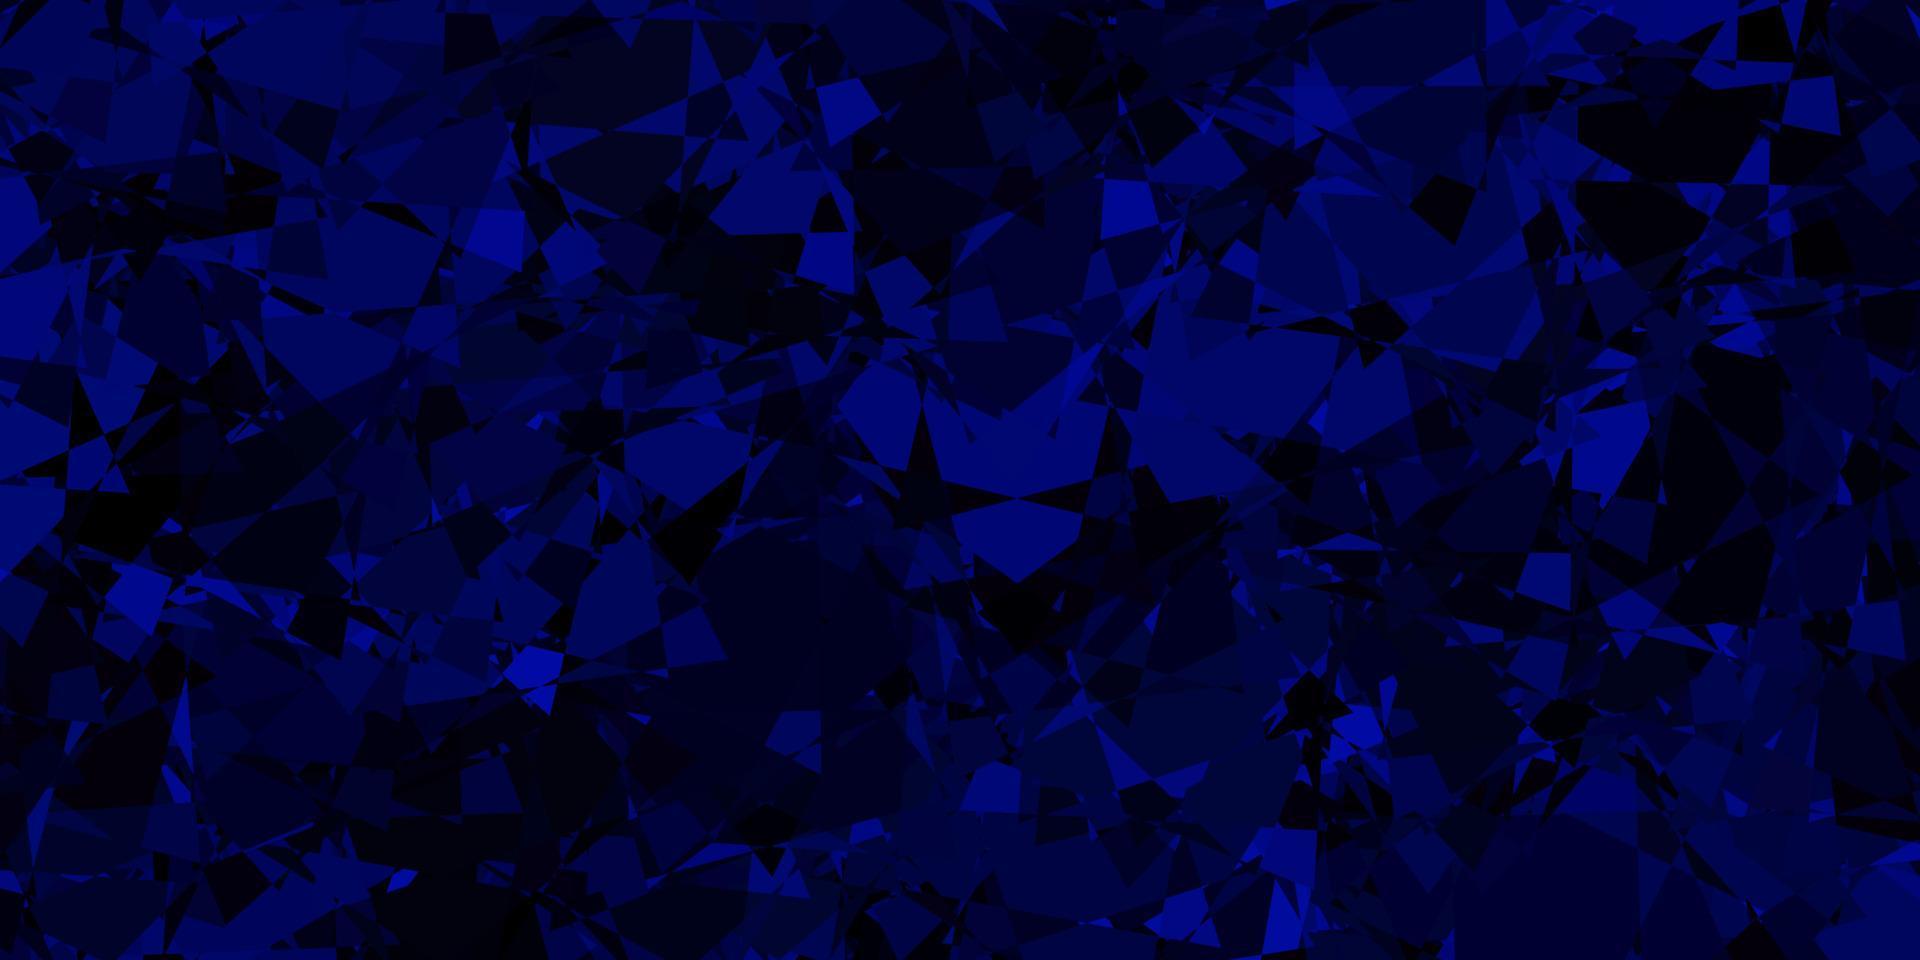 trama vettoriale blu scuro con triangoli casuali.